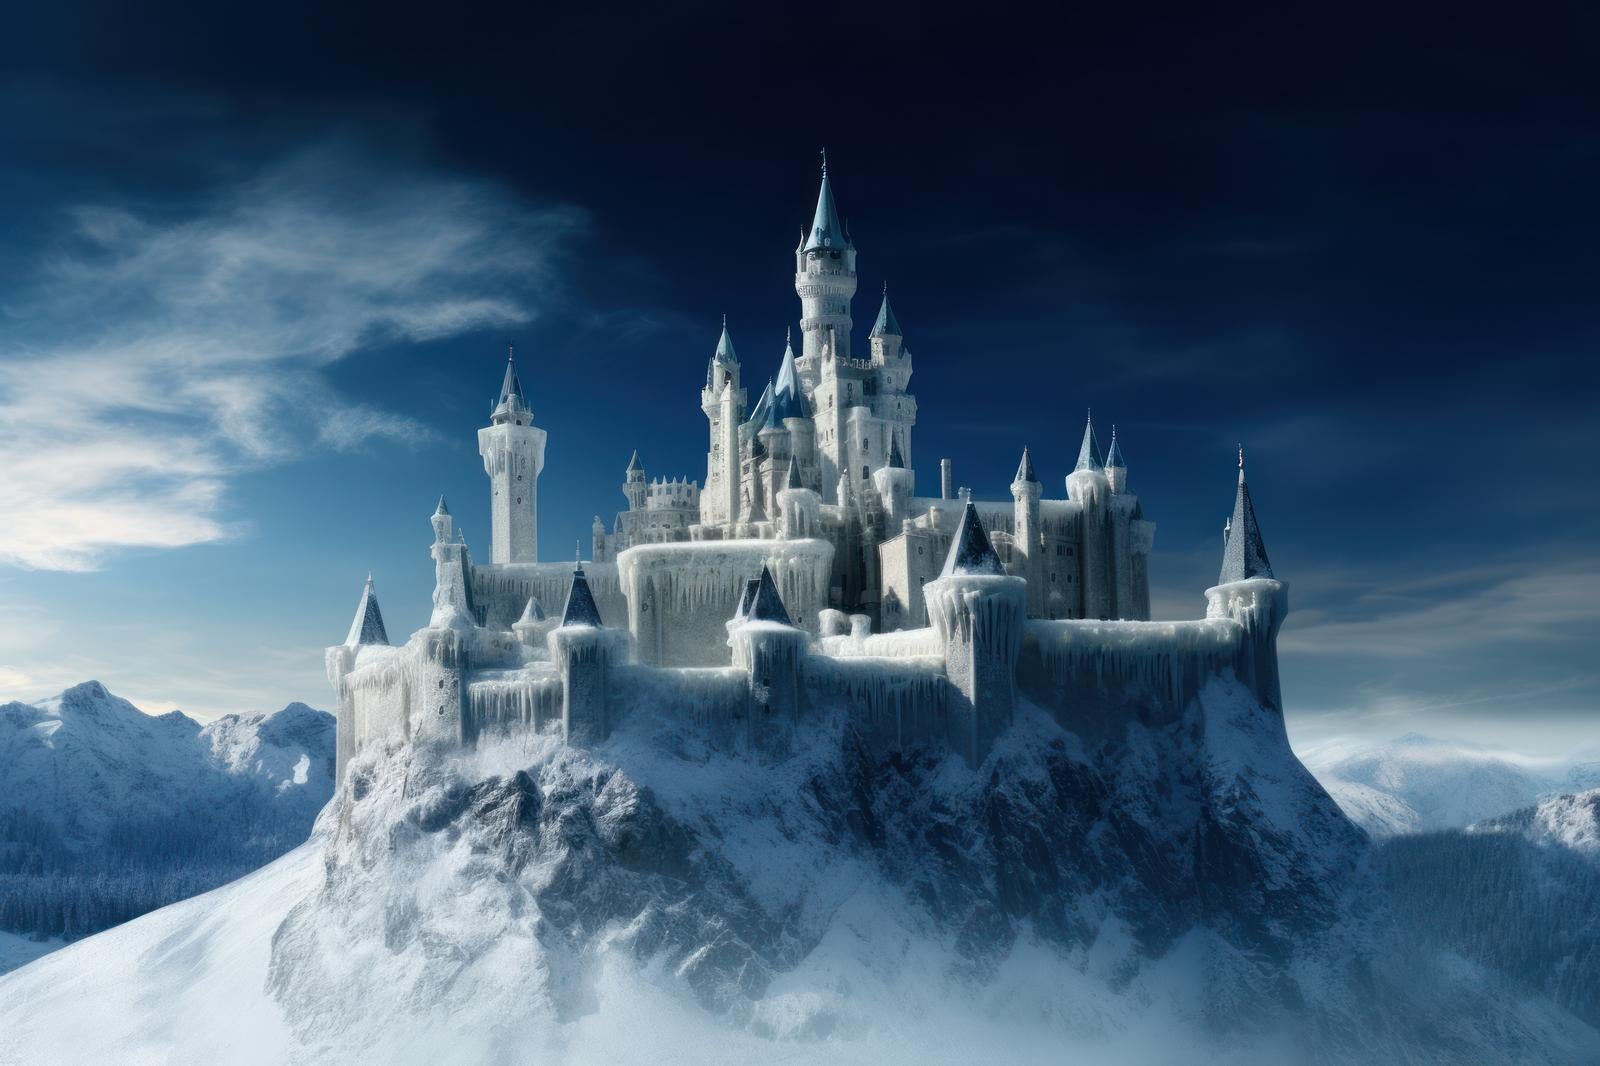 「白銀の調べ 雪化粧した宮殿の幻想的な世界」の写真